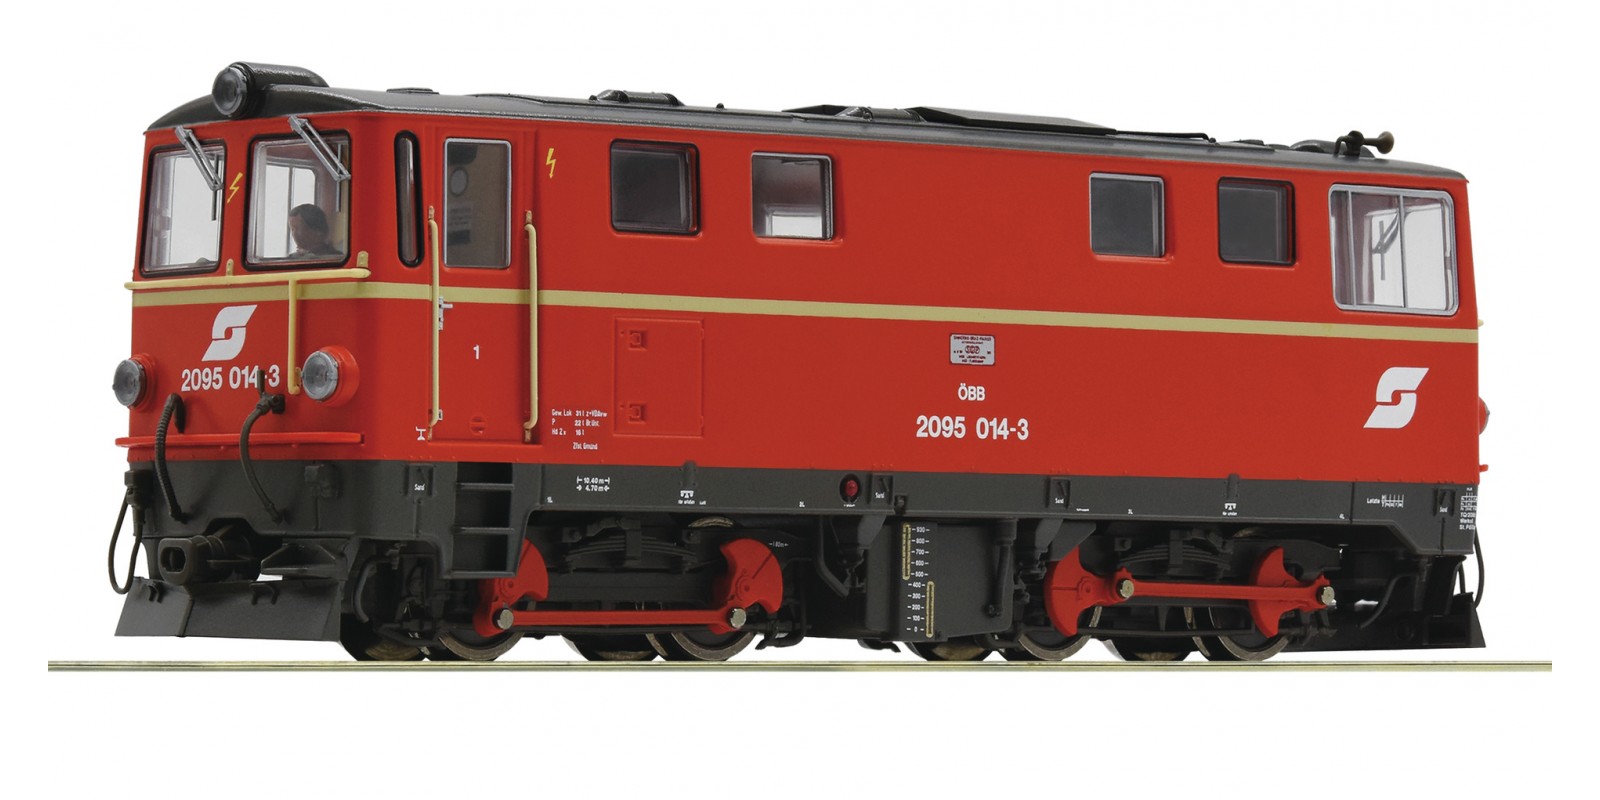 RO33297 - Diesel locomotive 2095 014-3, ÖBB